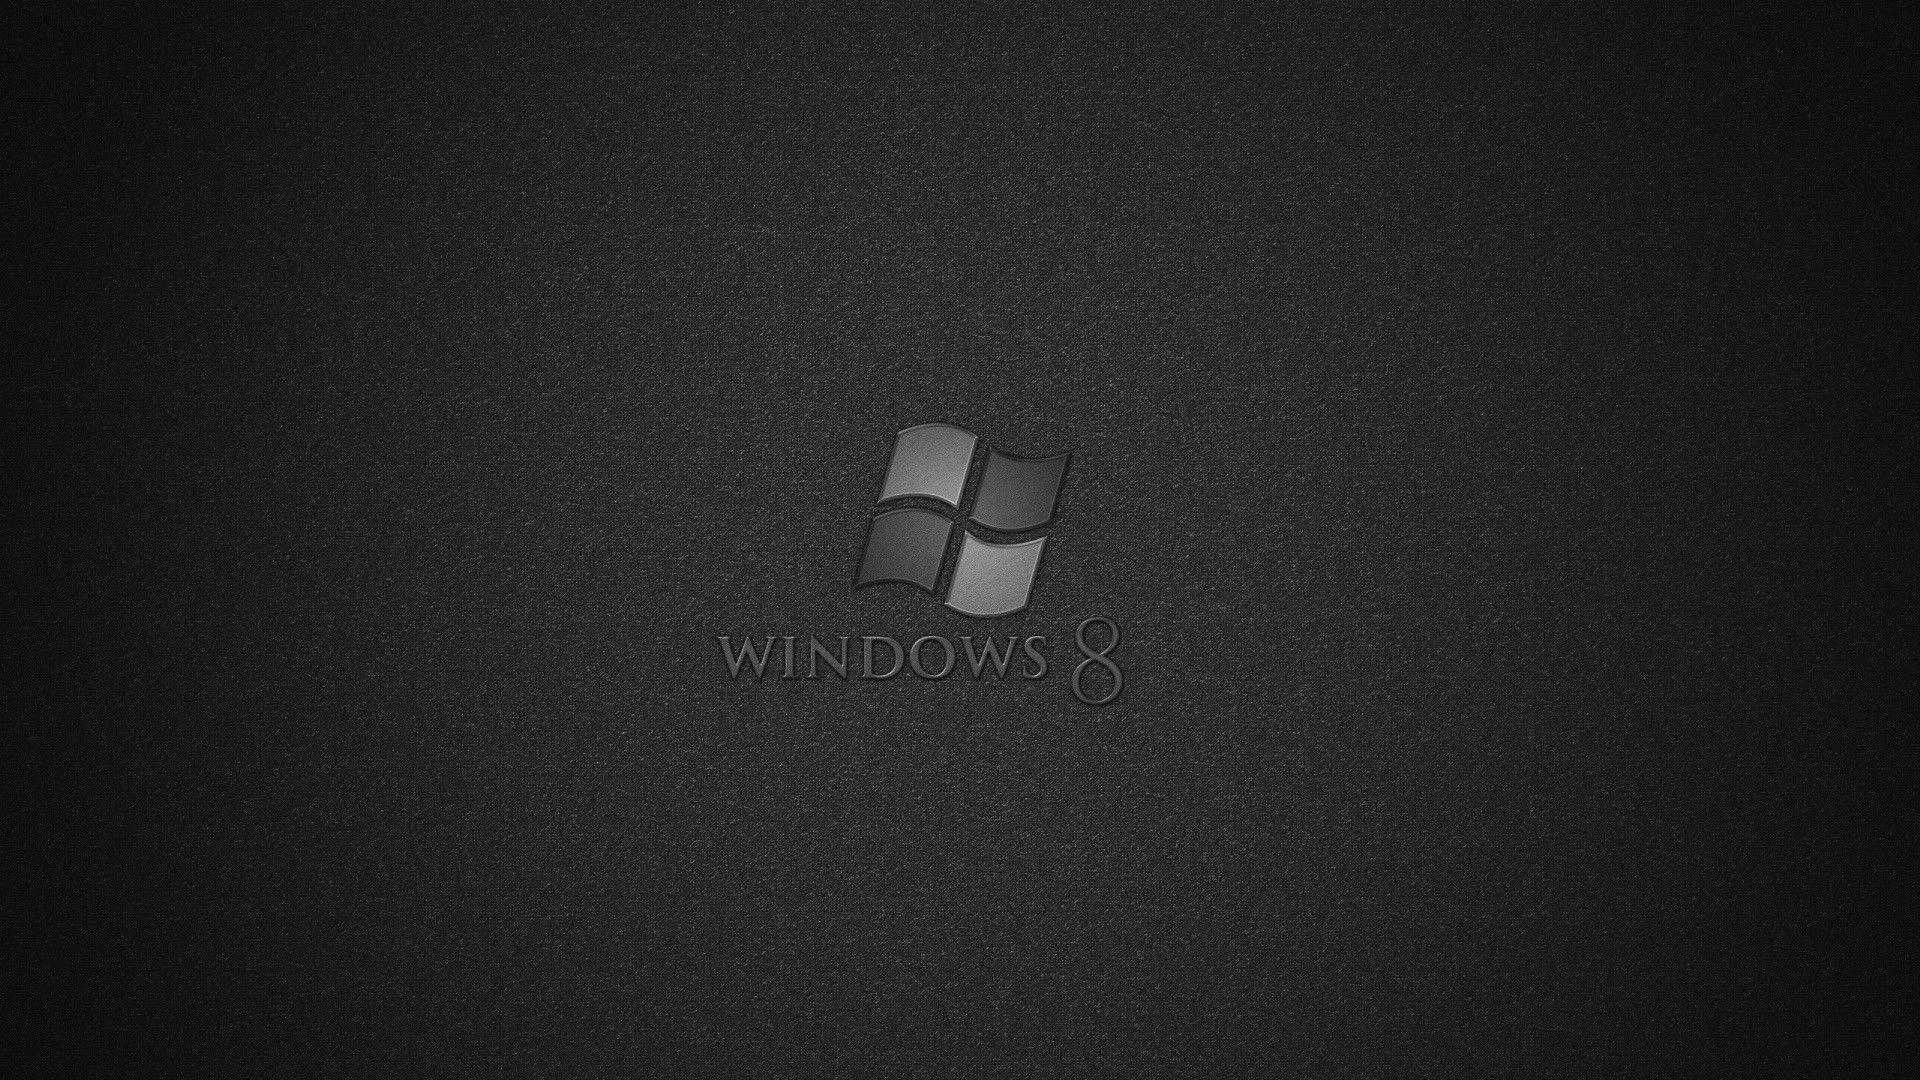 Minimalist Windows Wallpaper Free Minimalist Windows